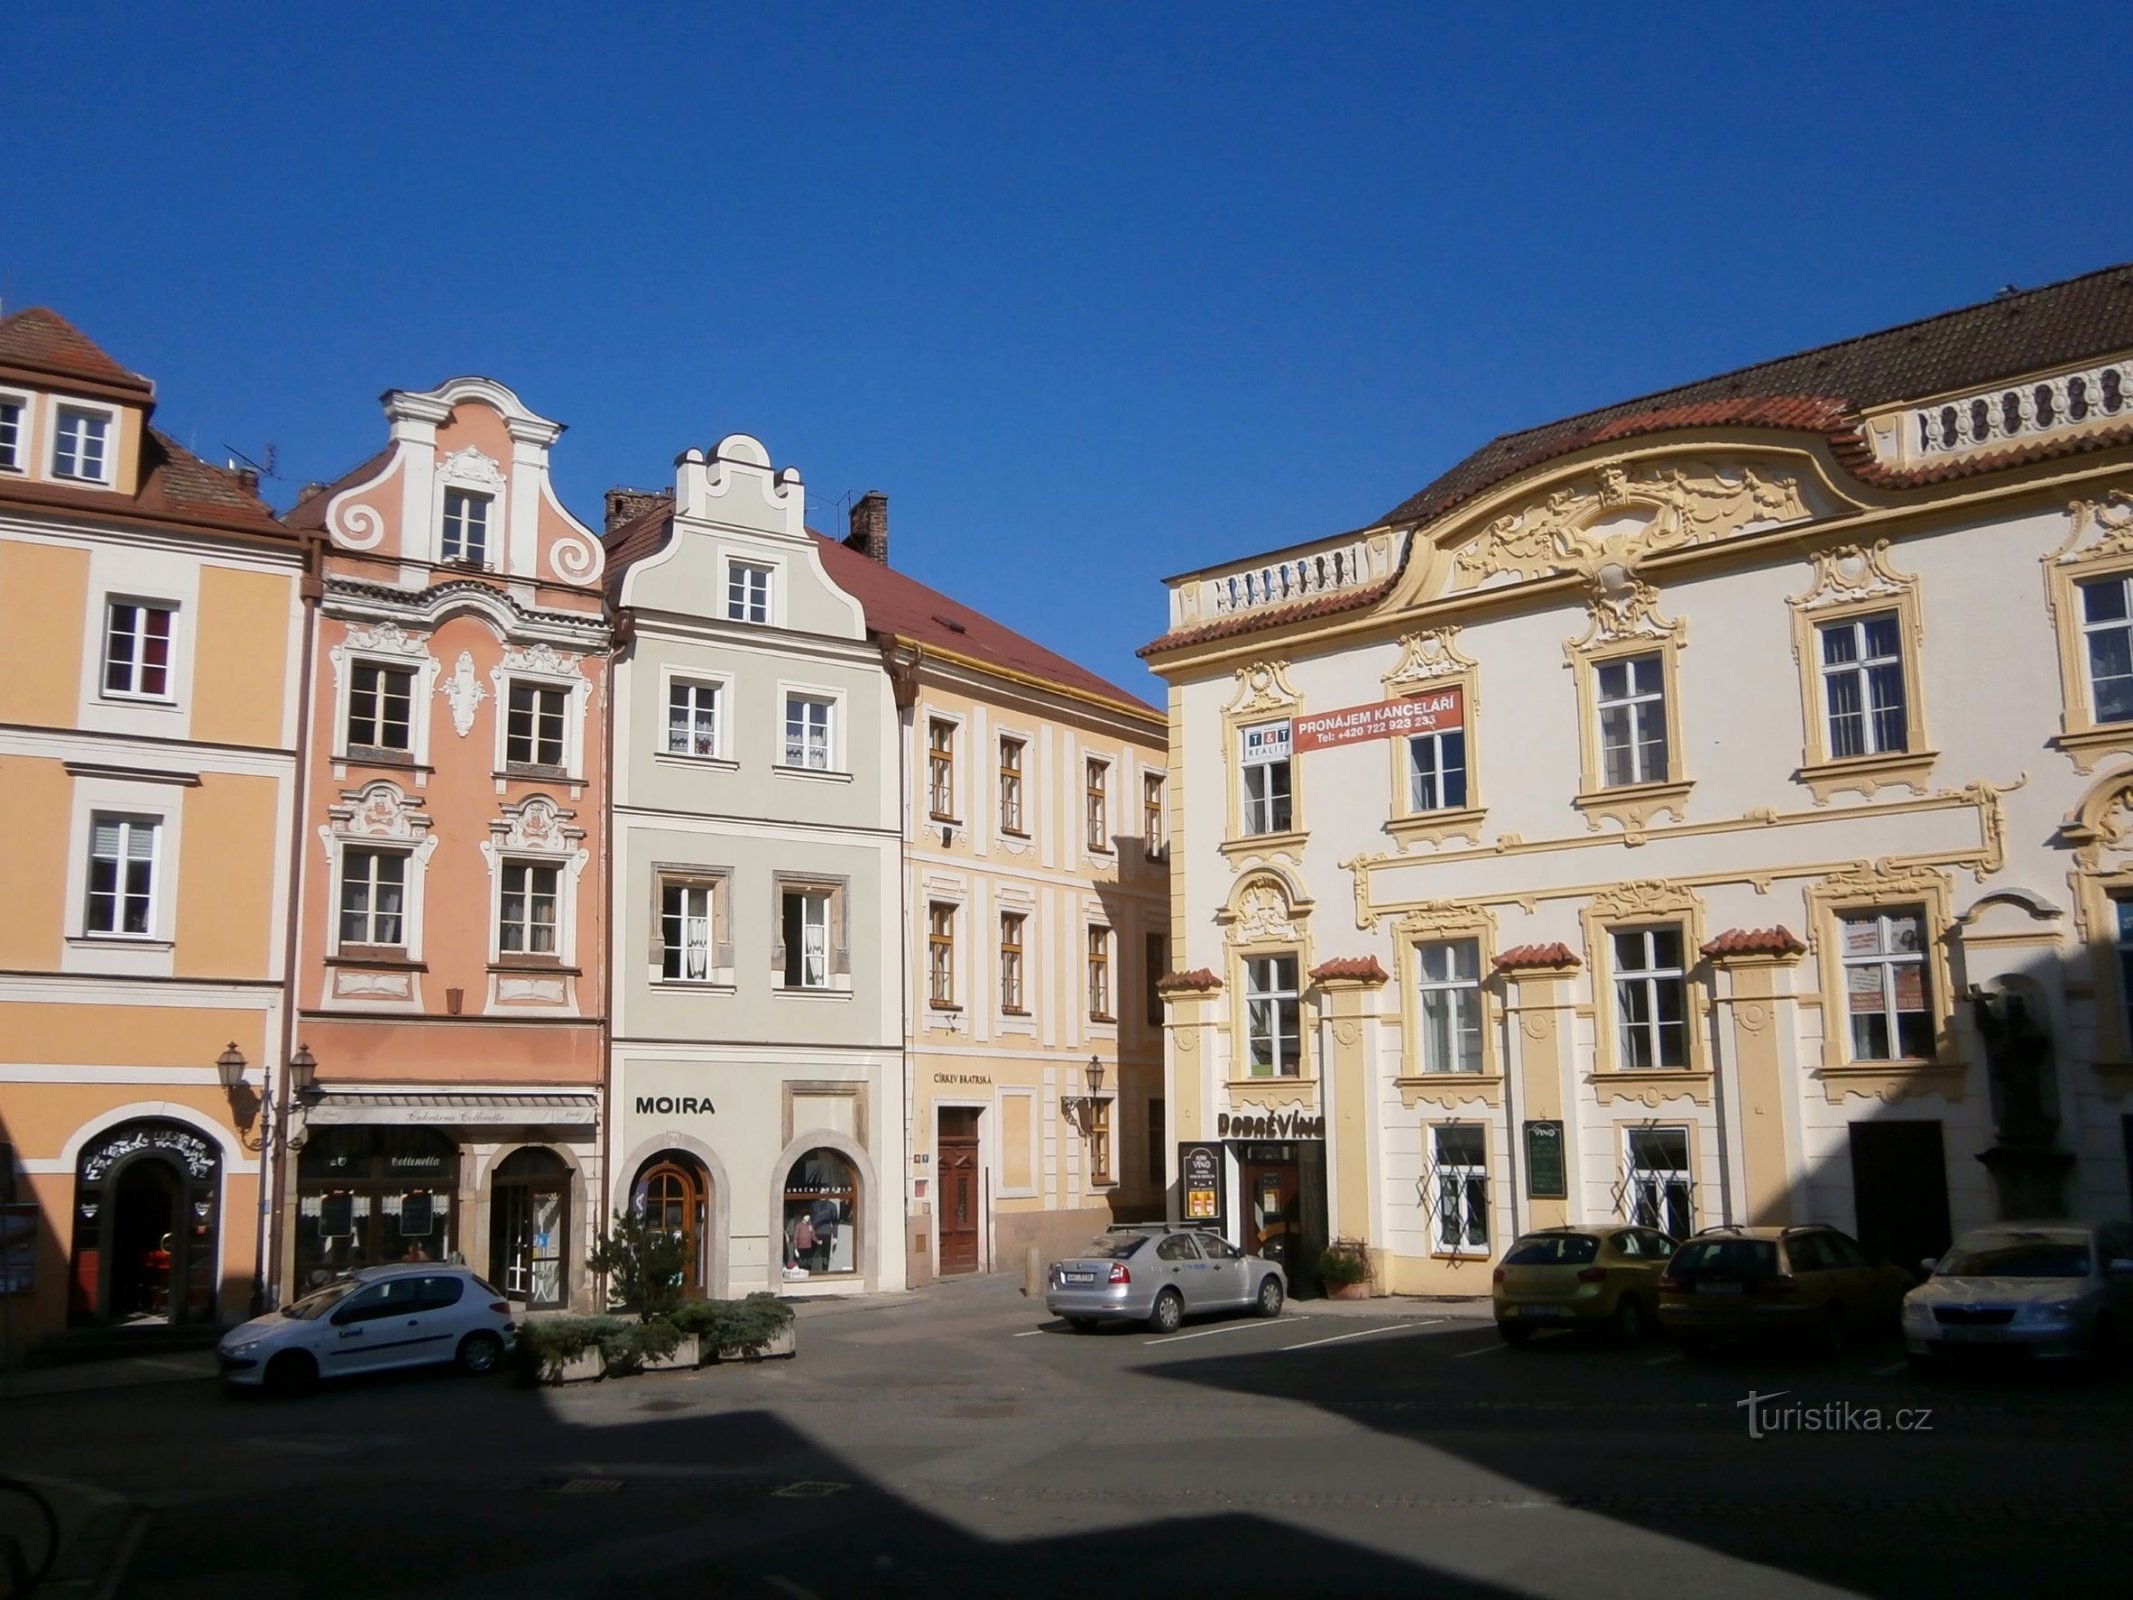 Вид на дом № 89 с площади на улице V Копечку (Градец Кралове, 28.3.2014)